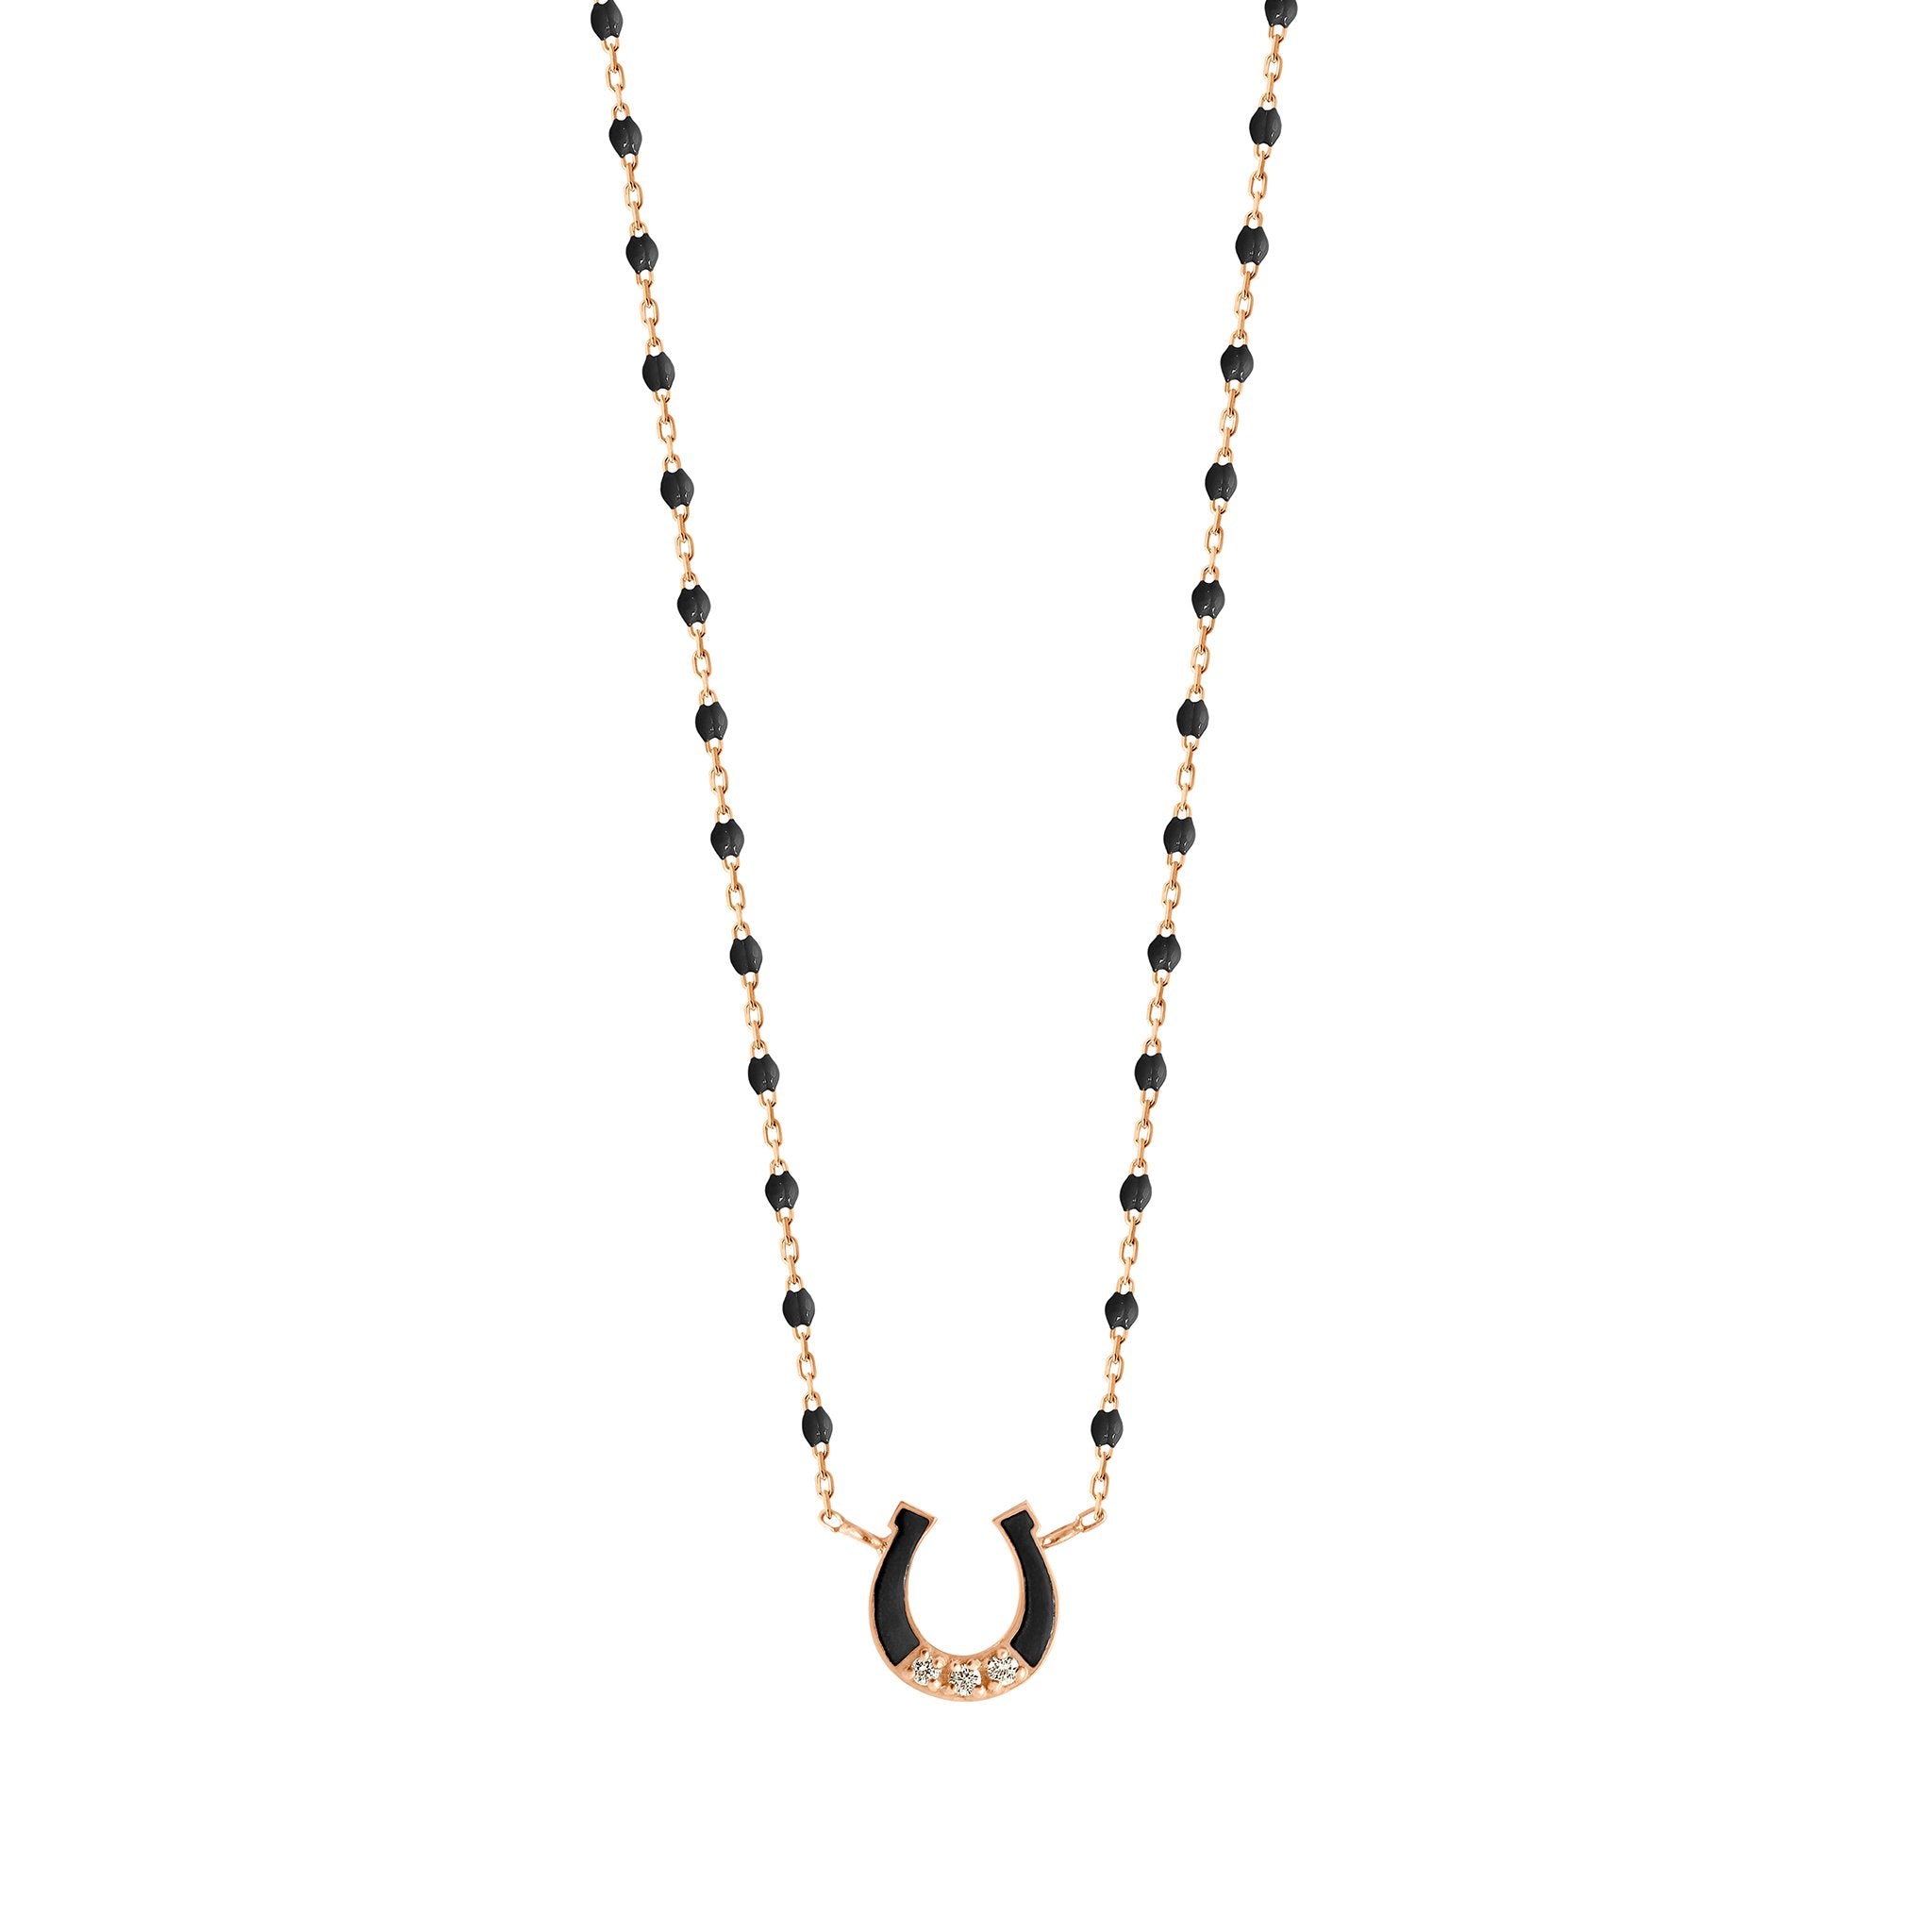 Gigi Clozeau - Collier Fer à cheval, or rose, diamants et mini perles de résine noire, 42 cm